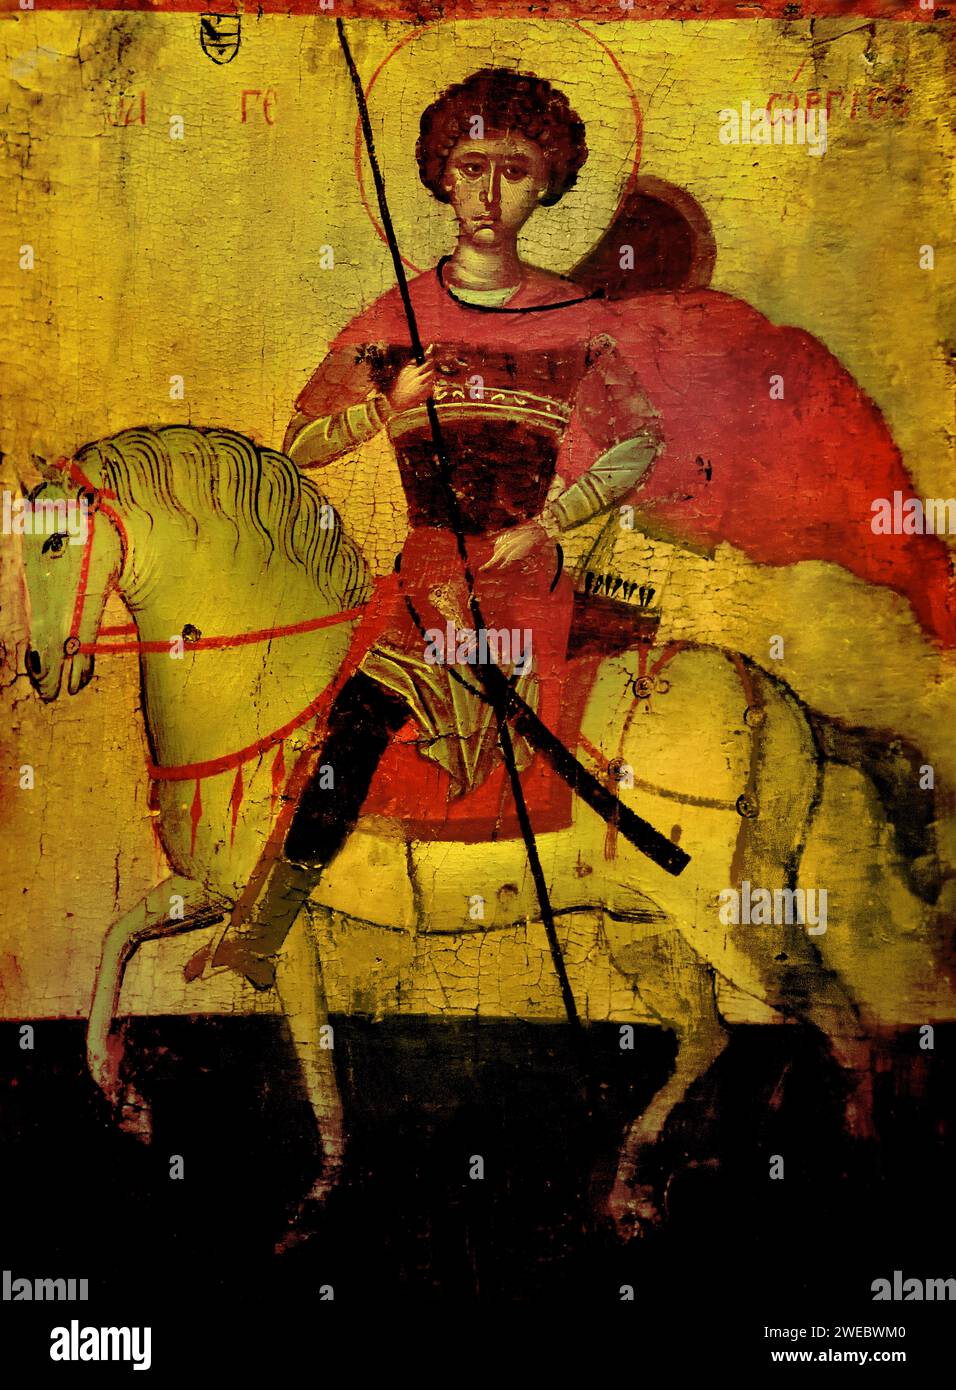 St George à cheval atelier crétois du 15e siècle Musée Benaki Athènes Grèce. Banque D'Images